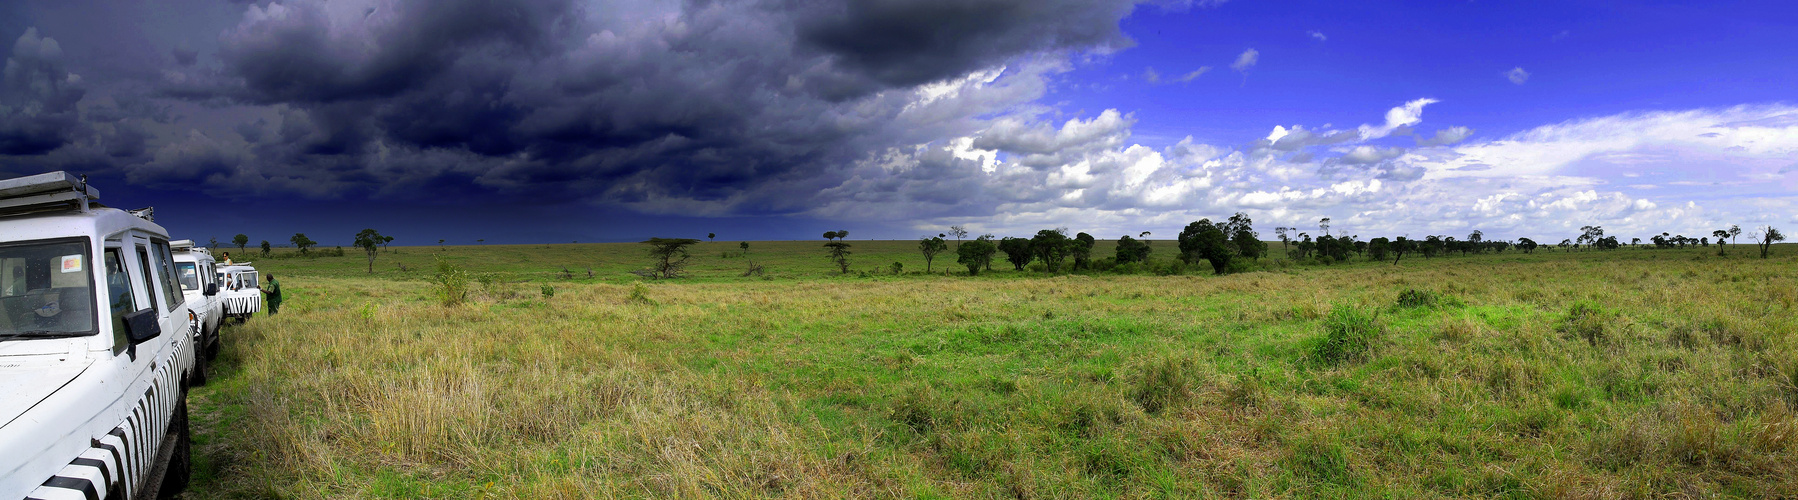 in der Masai Mara beginnt die Regenzeit